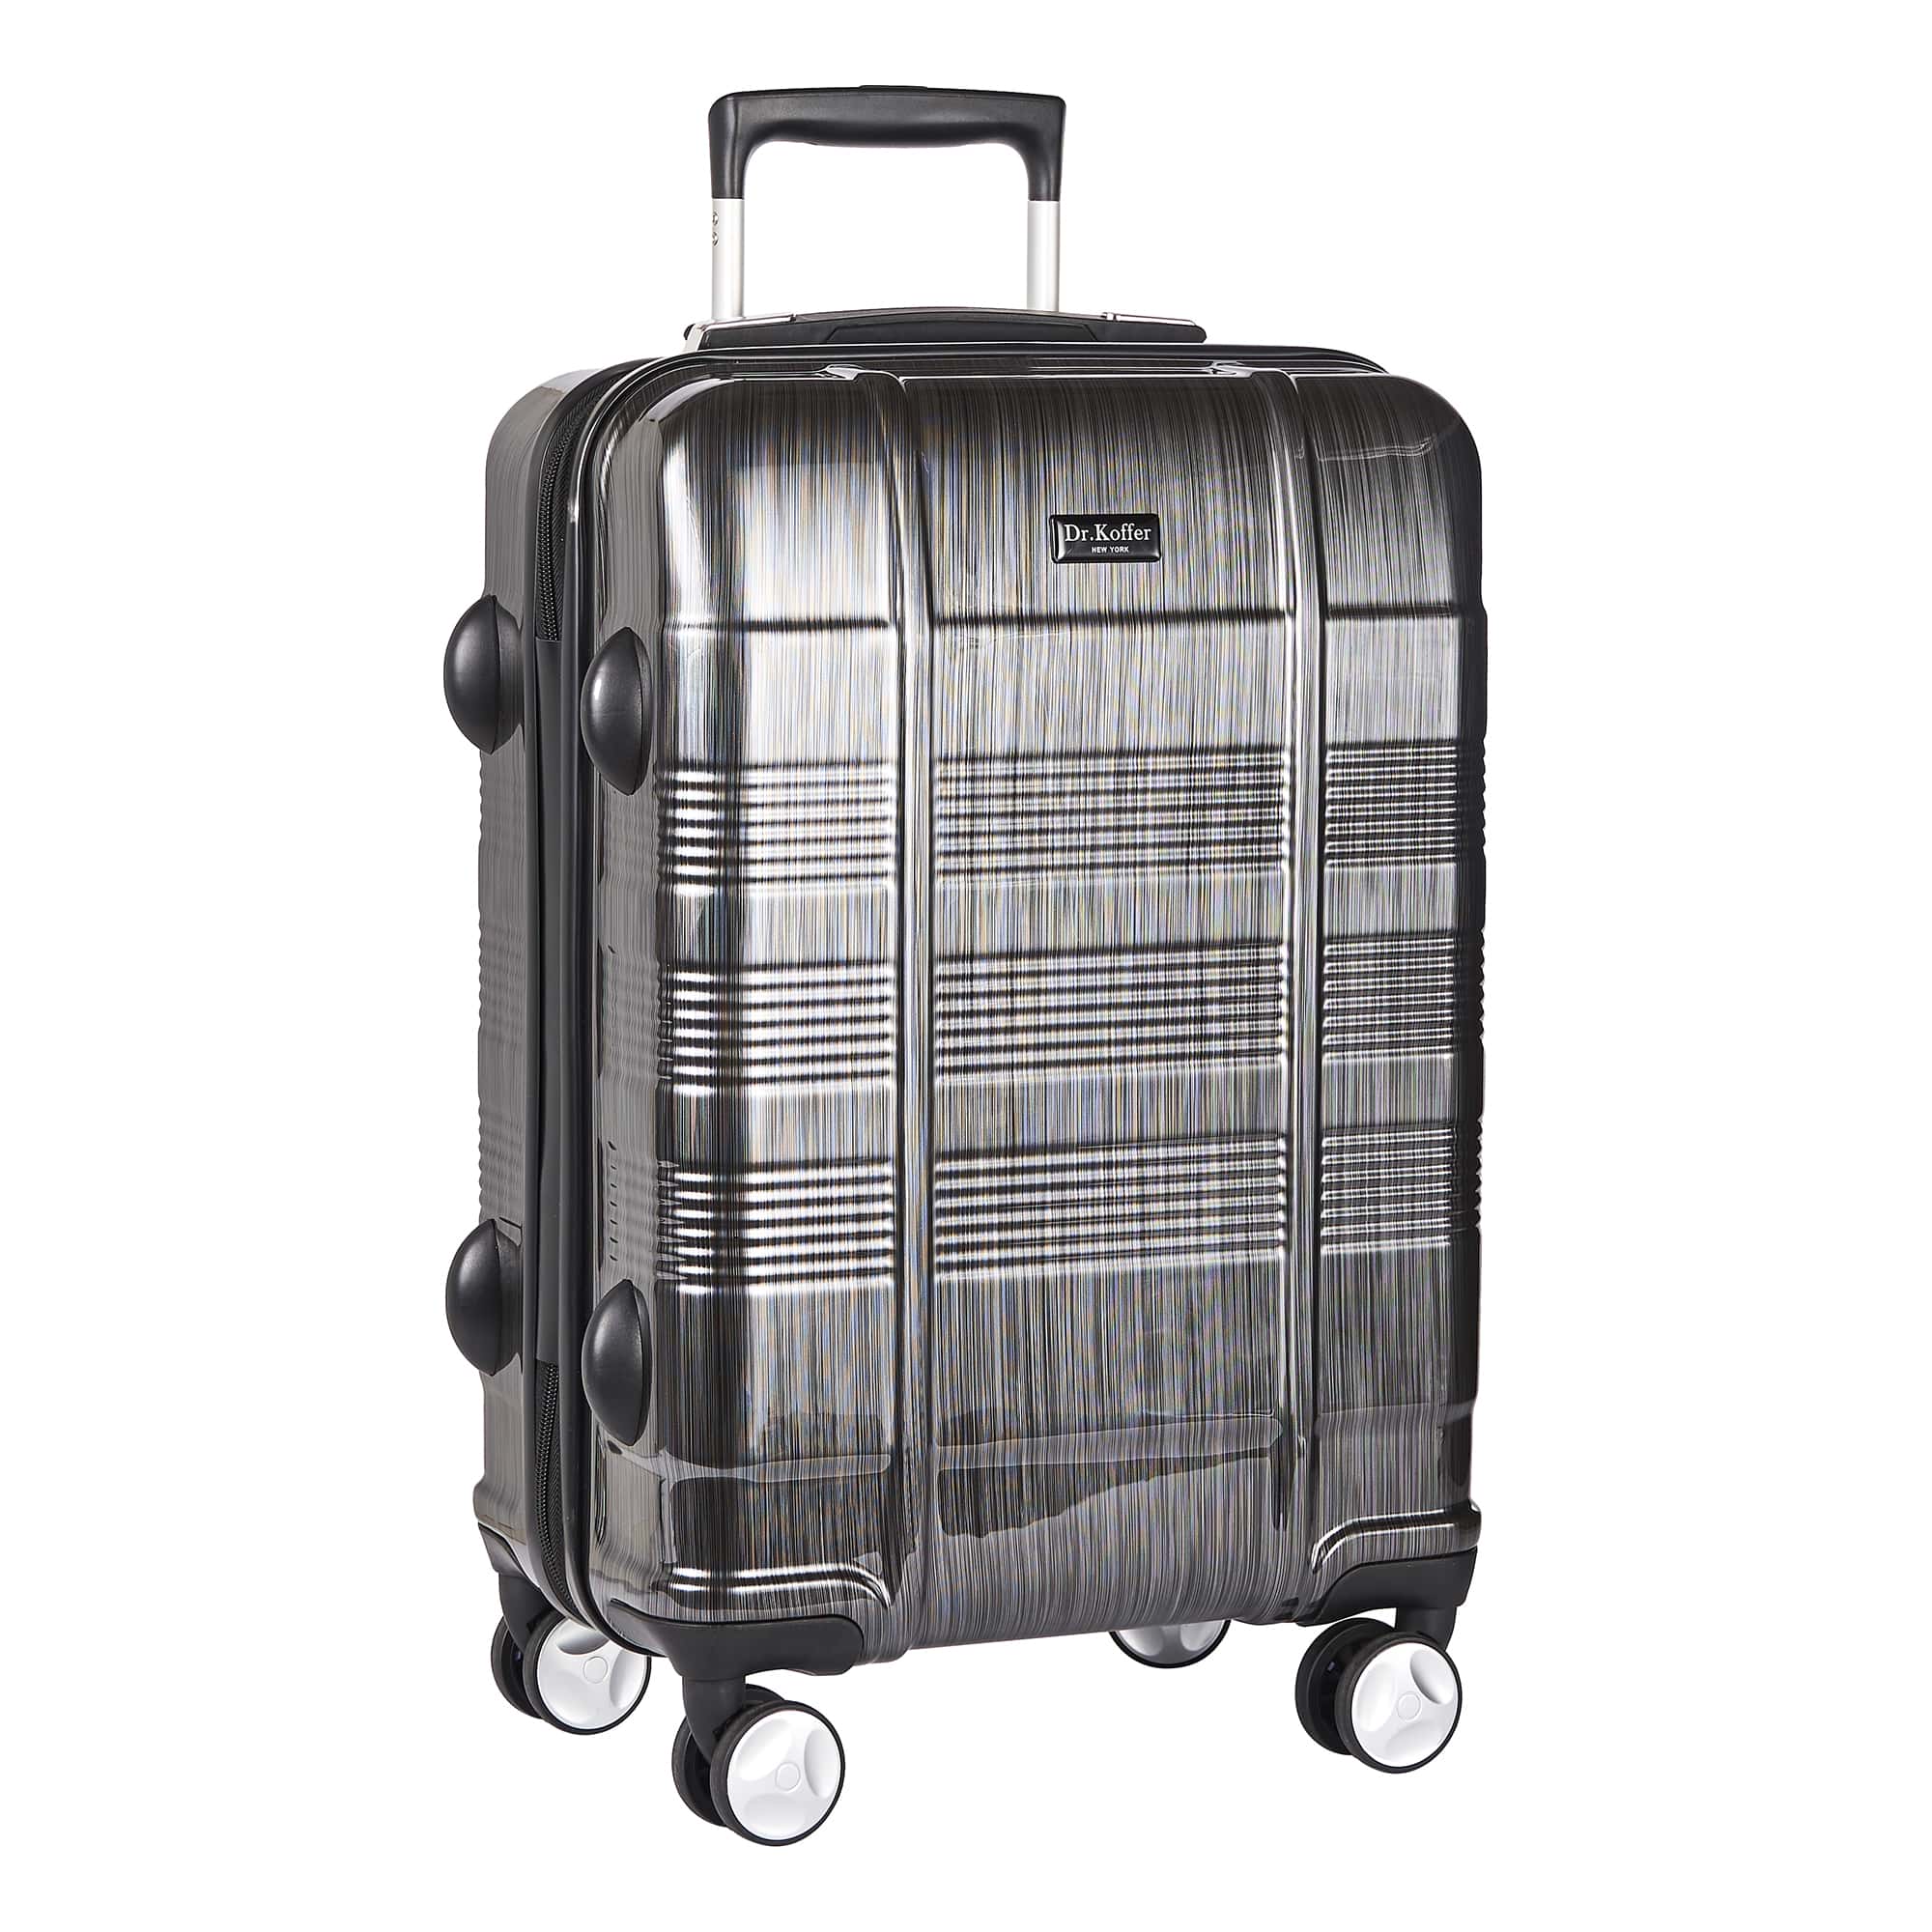 Др.Коффер L100TC19-250-27 чемодан, цвет серый - фото 2